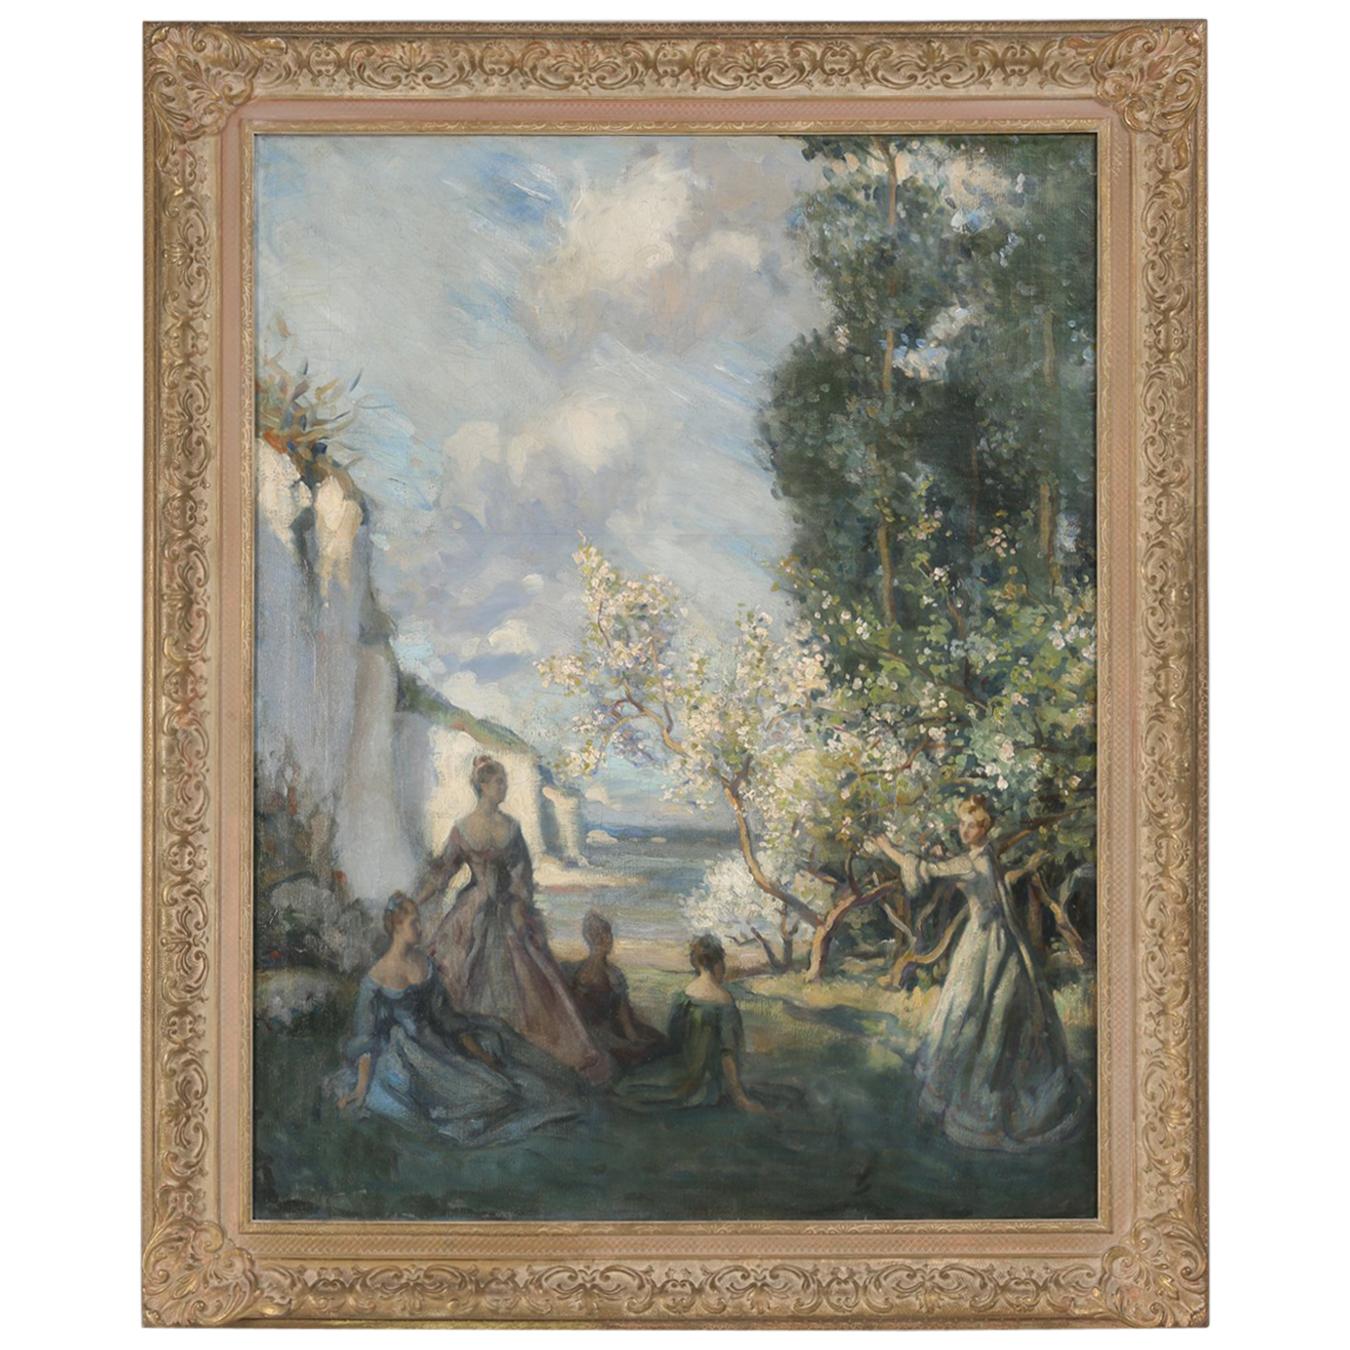 Original European Impressionist Oil Painting, circa 1900-1920